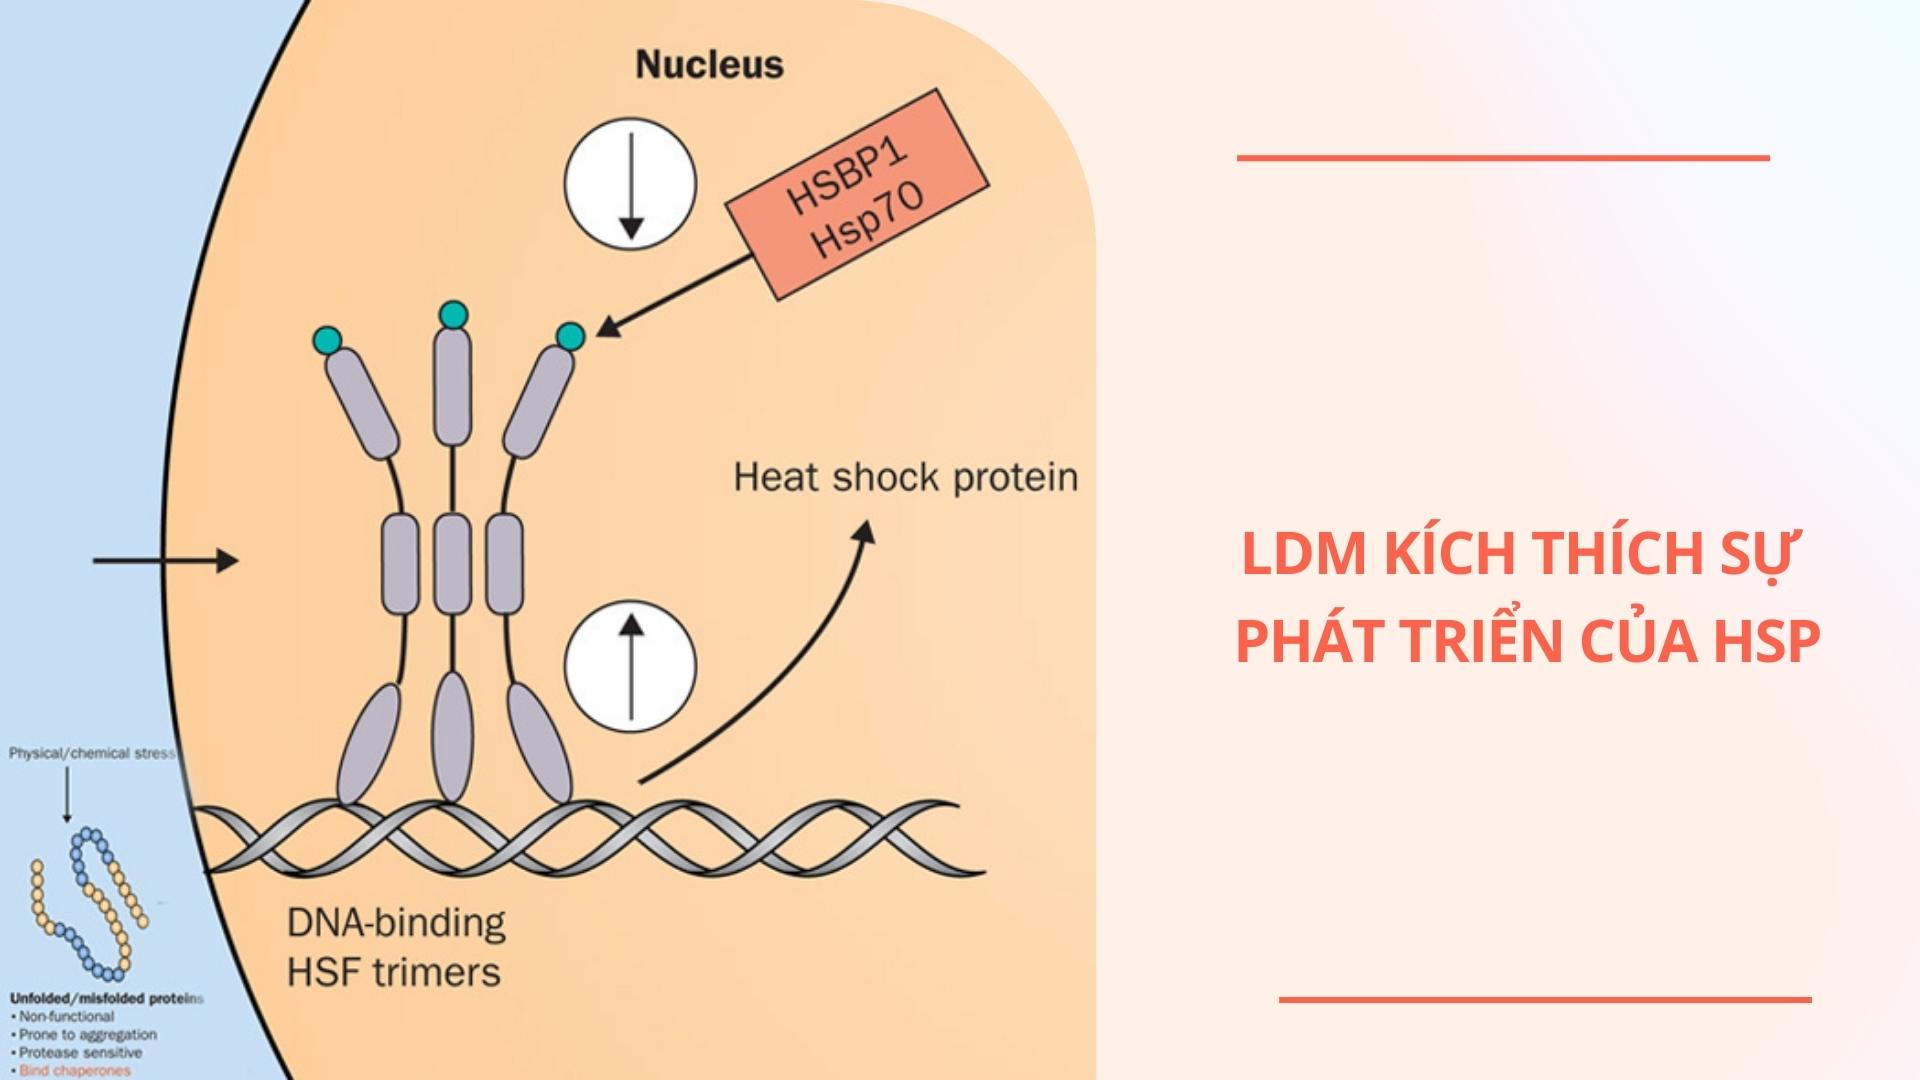 LDM kích thích sự phát triển của HSP